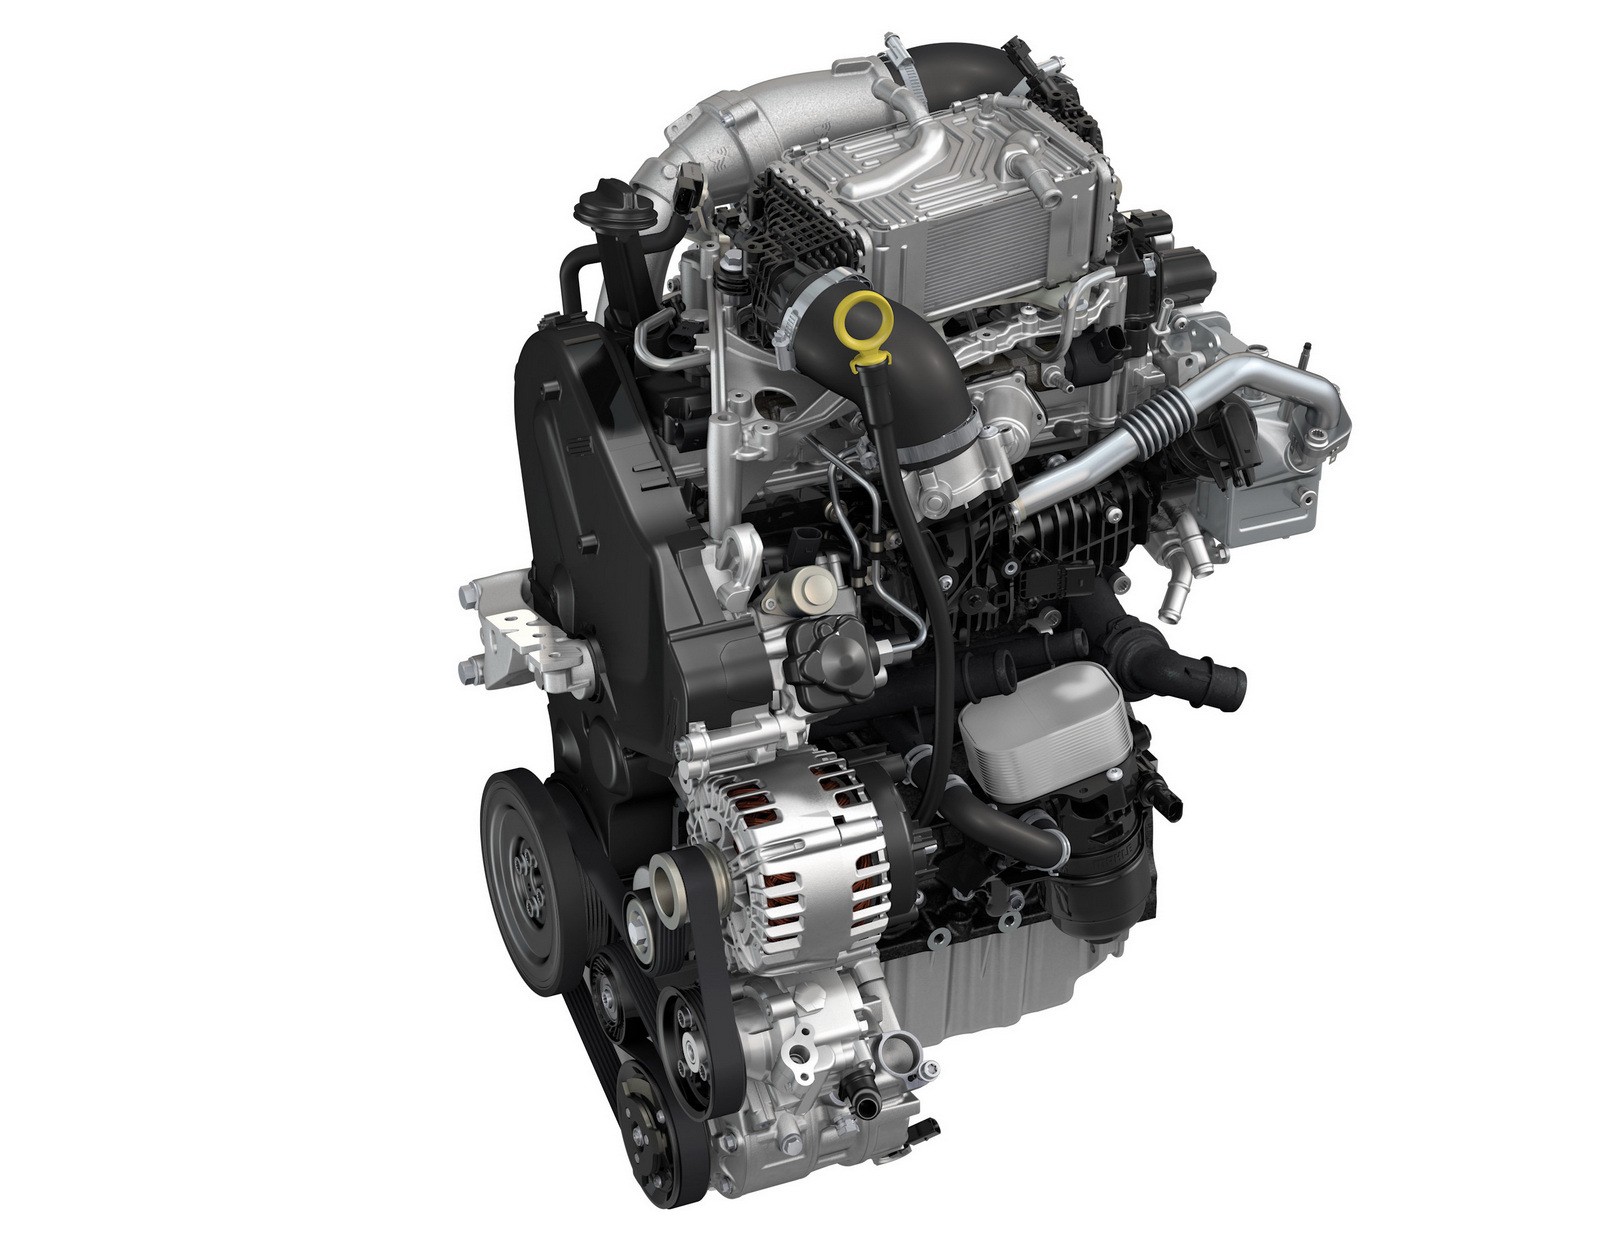 Двигатель aeh/akl - характеристики, проблемы, модификации и надежность